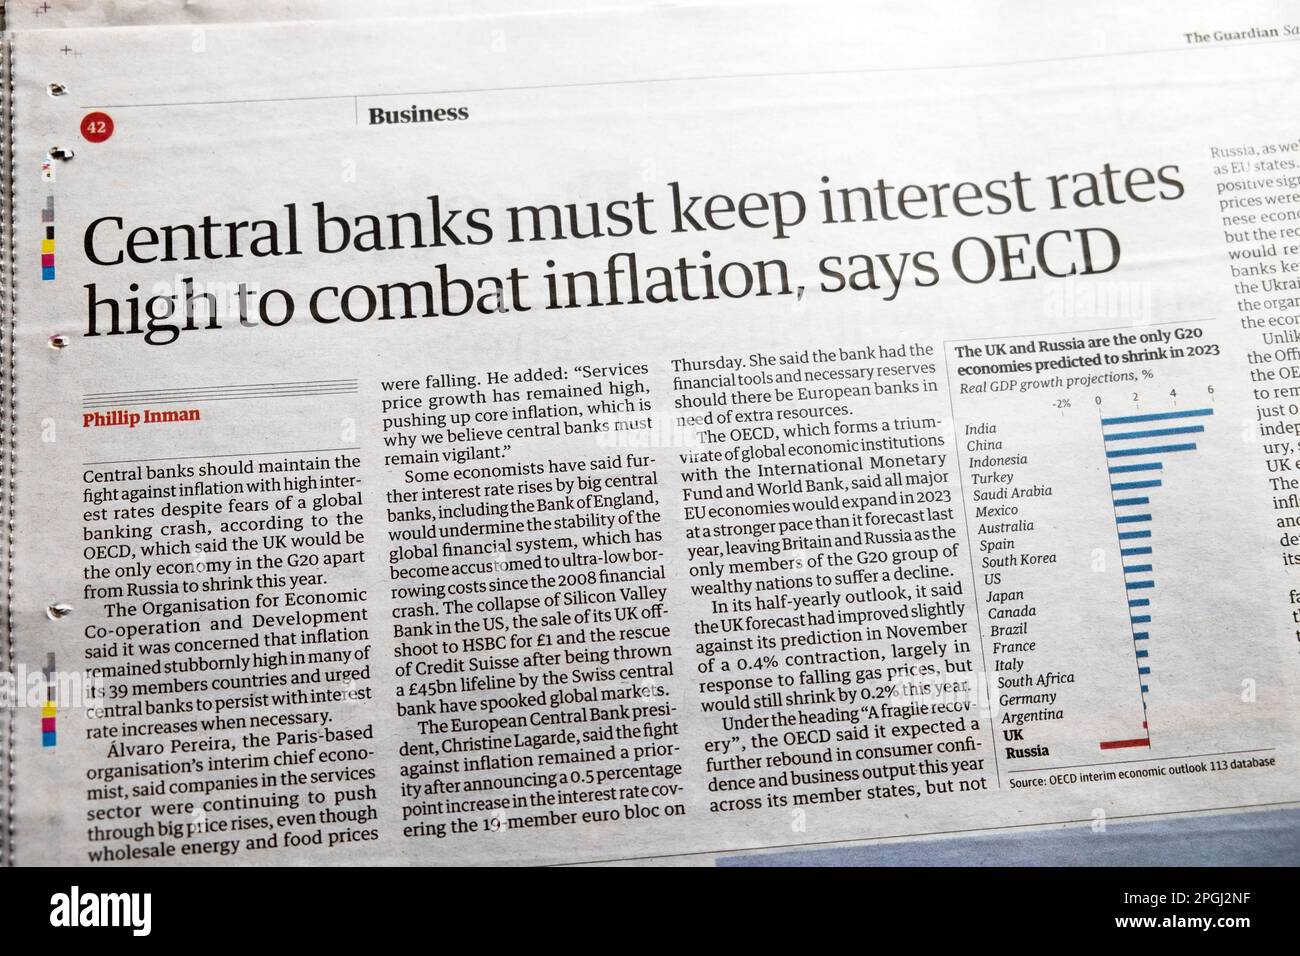 "Le banche centrali devono mantenere alti i tassi di interesse per combattere l'inflazione", afferma l'articolo finanziario del quotidiano Guardian dell'OCSE 18th marzo 2023 Londra UK Foto Stock